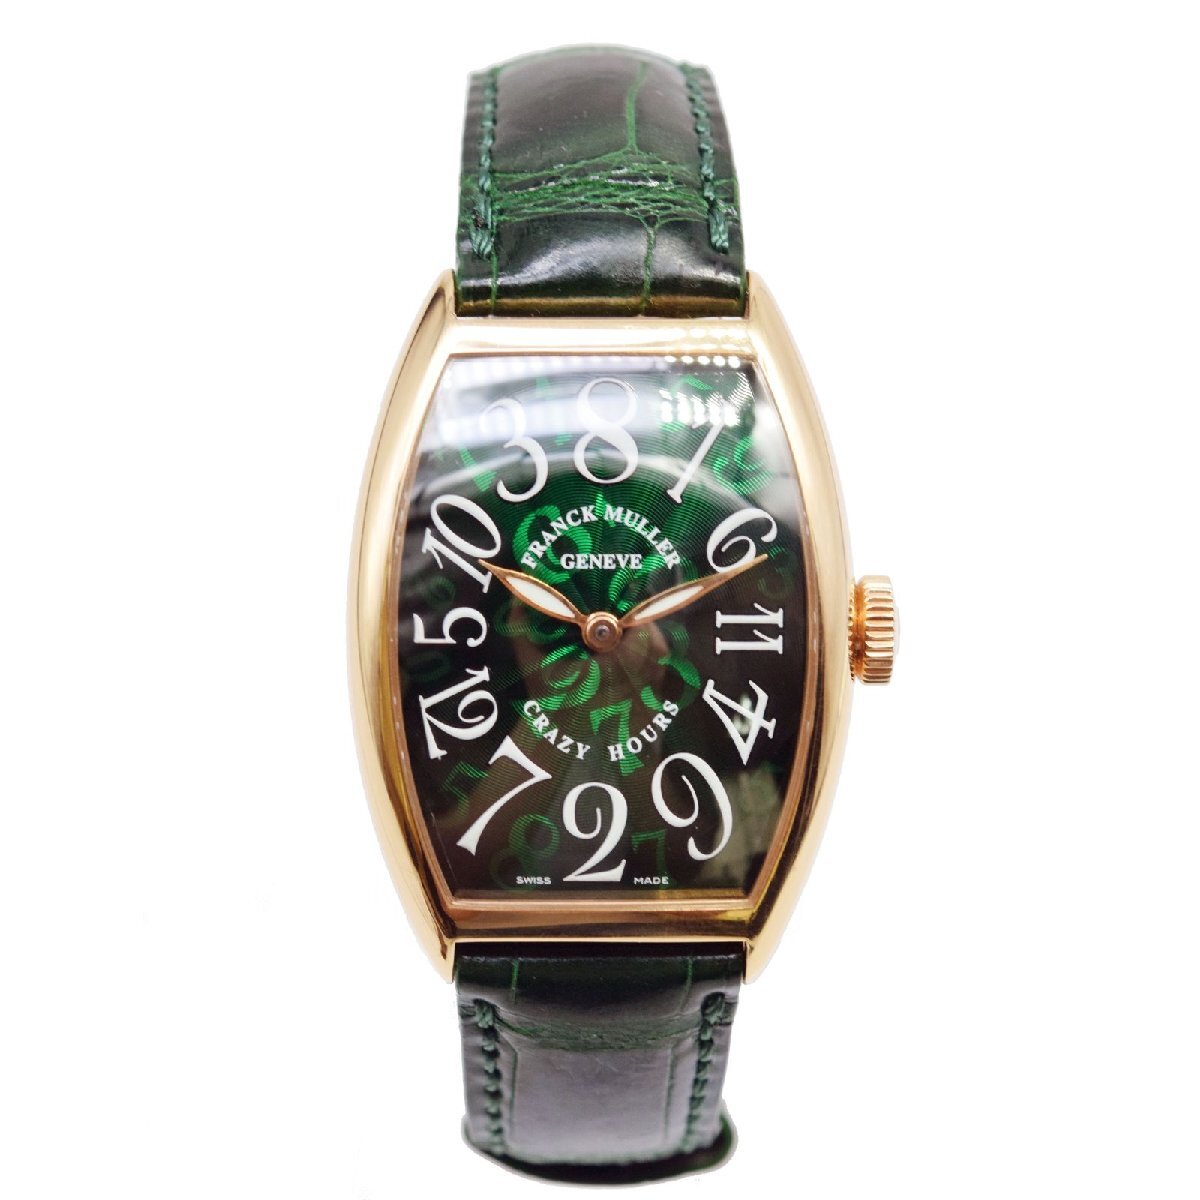 【新品】Franck Muller/フランク・ミュラー Crazy Hour 5850 CH 5N GR GR ピンクゴールド 自動巻き メンズ腕時計 #37146の画像1